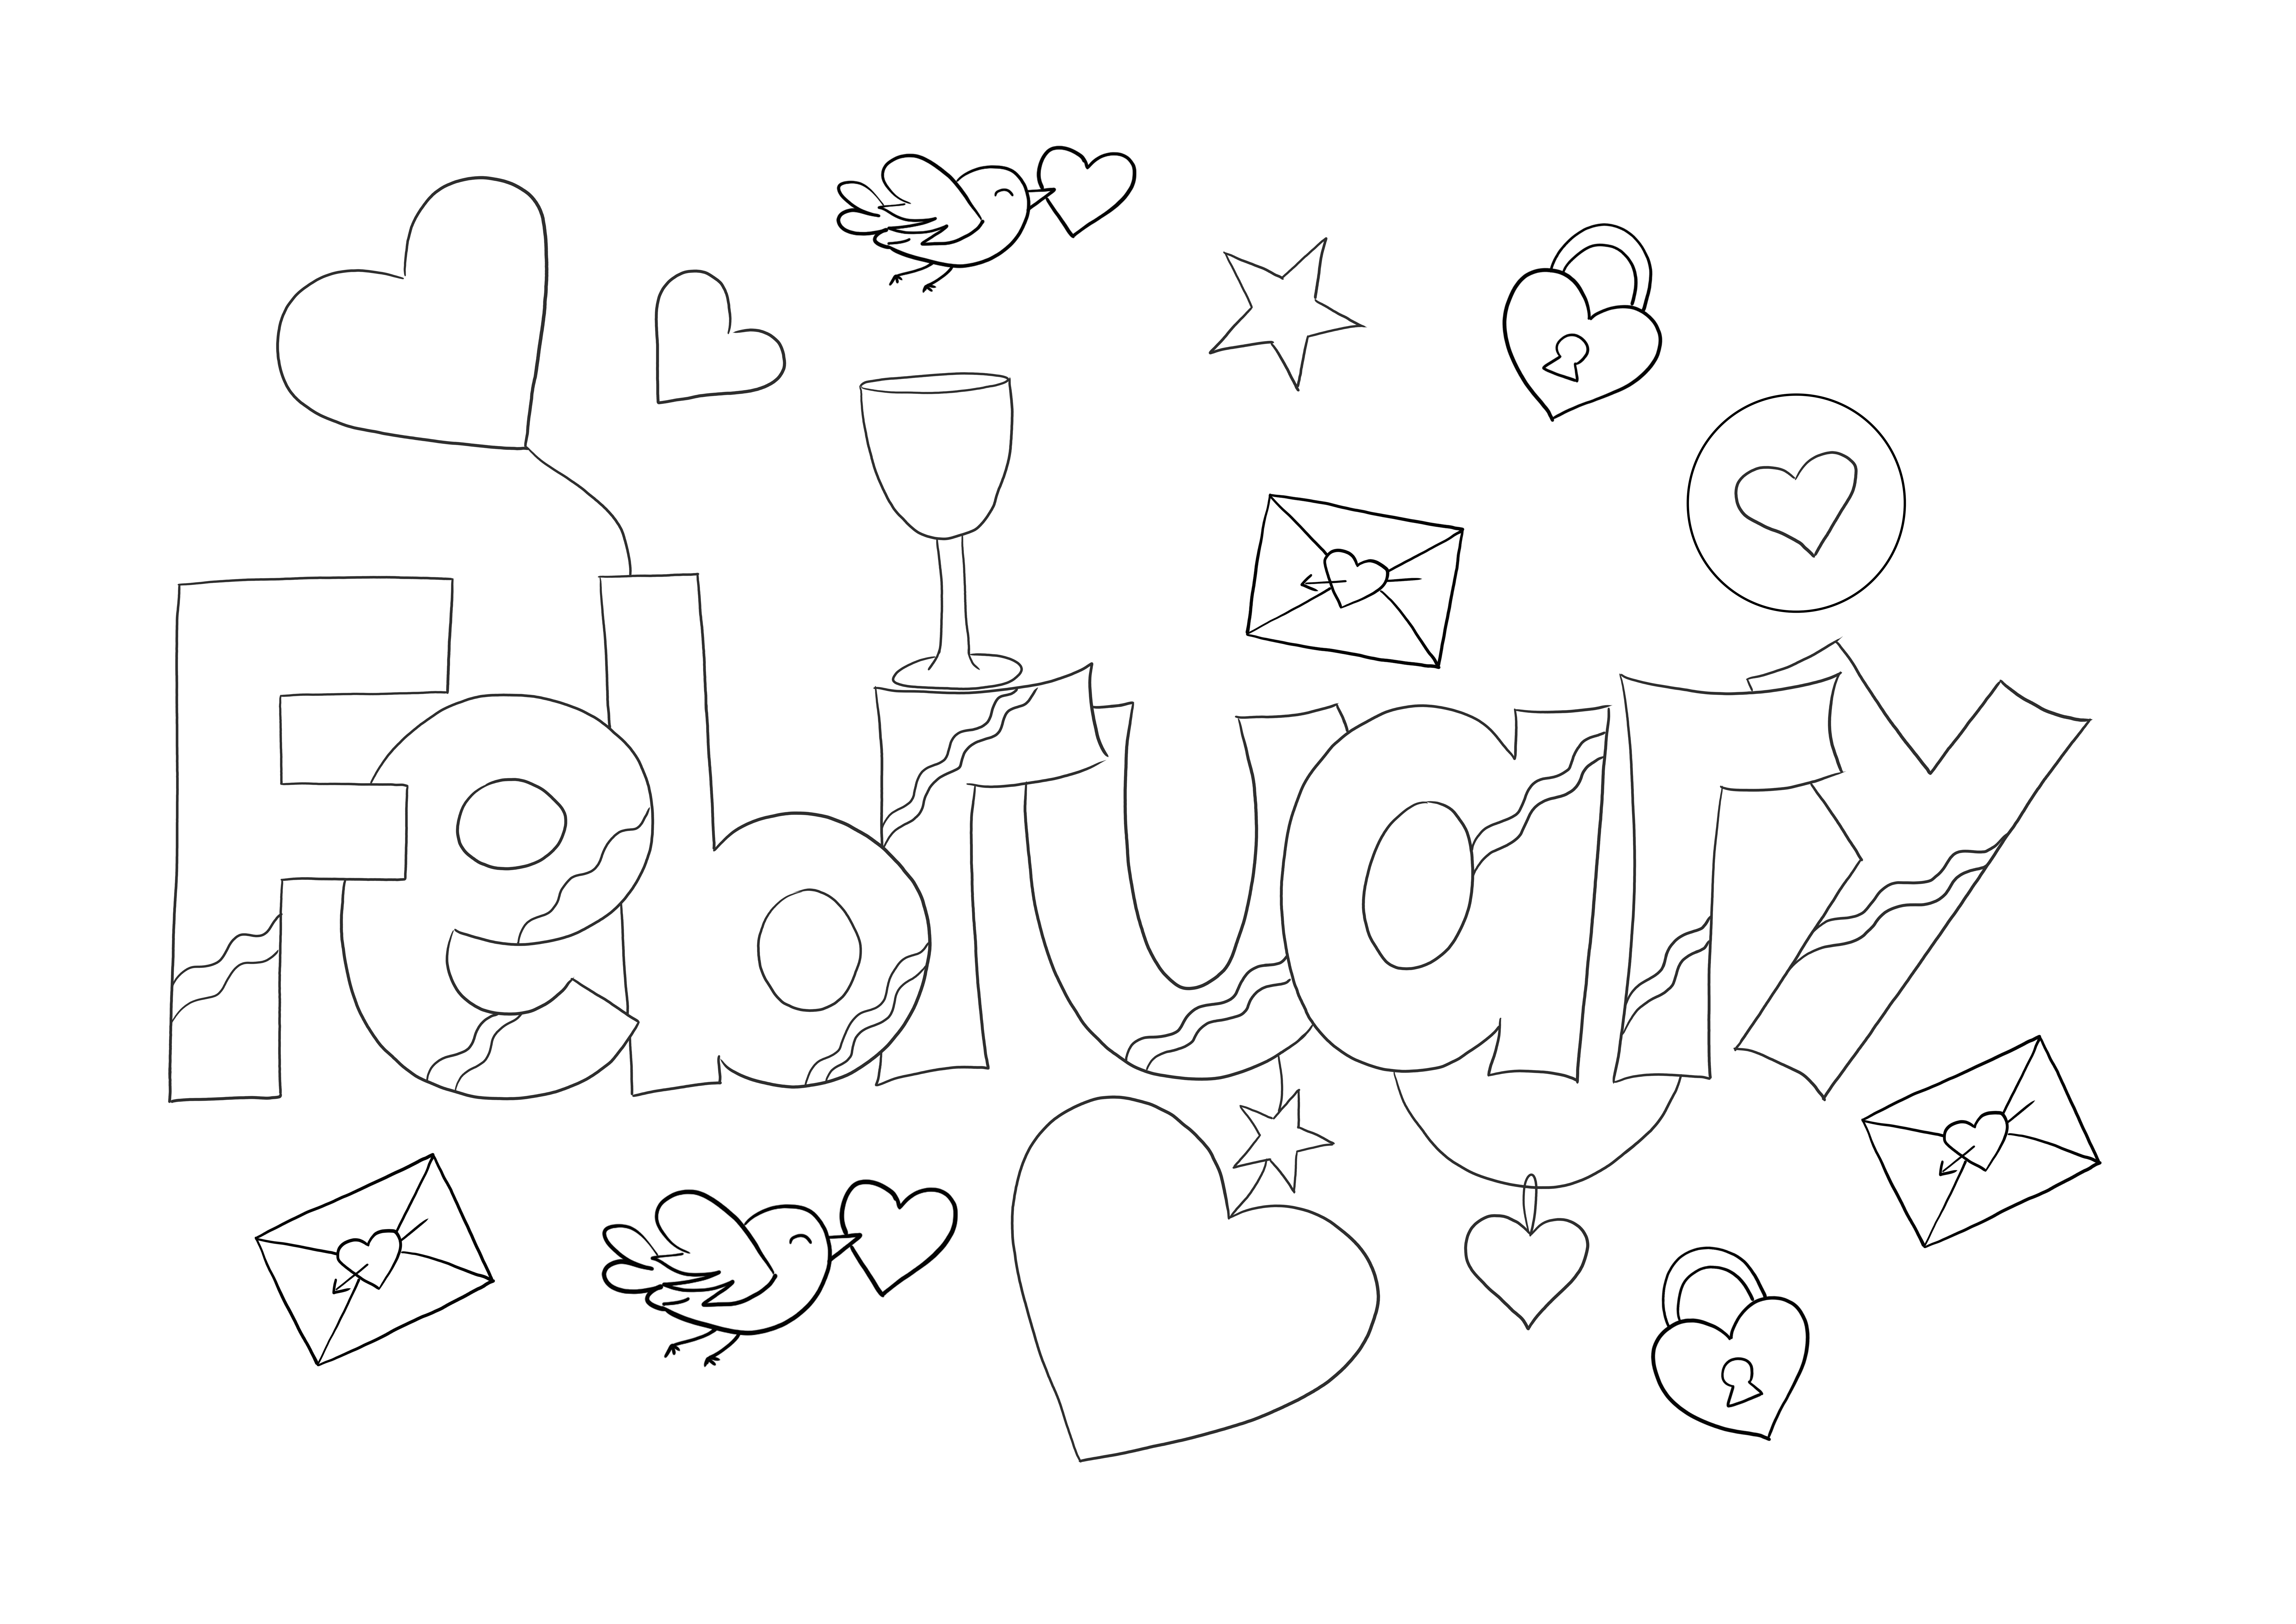 Színező Valentin-kártya februárban letölthető vagy kinyomtatható ingyen